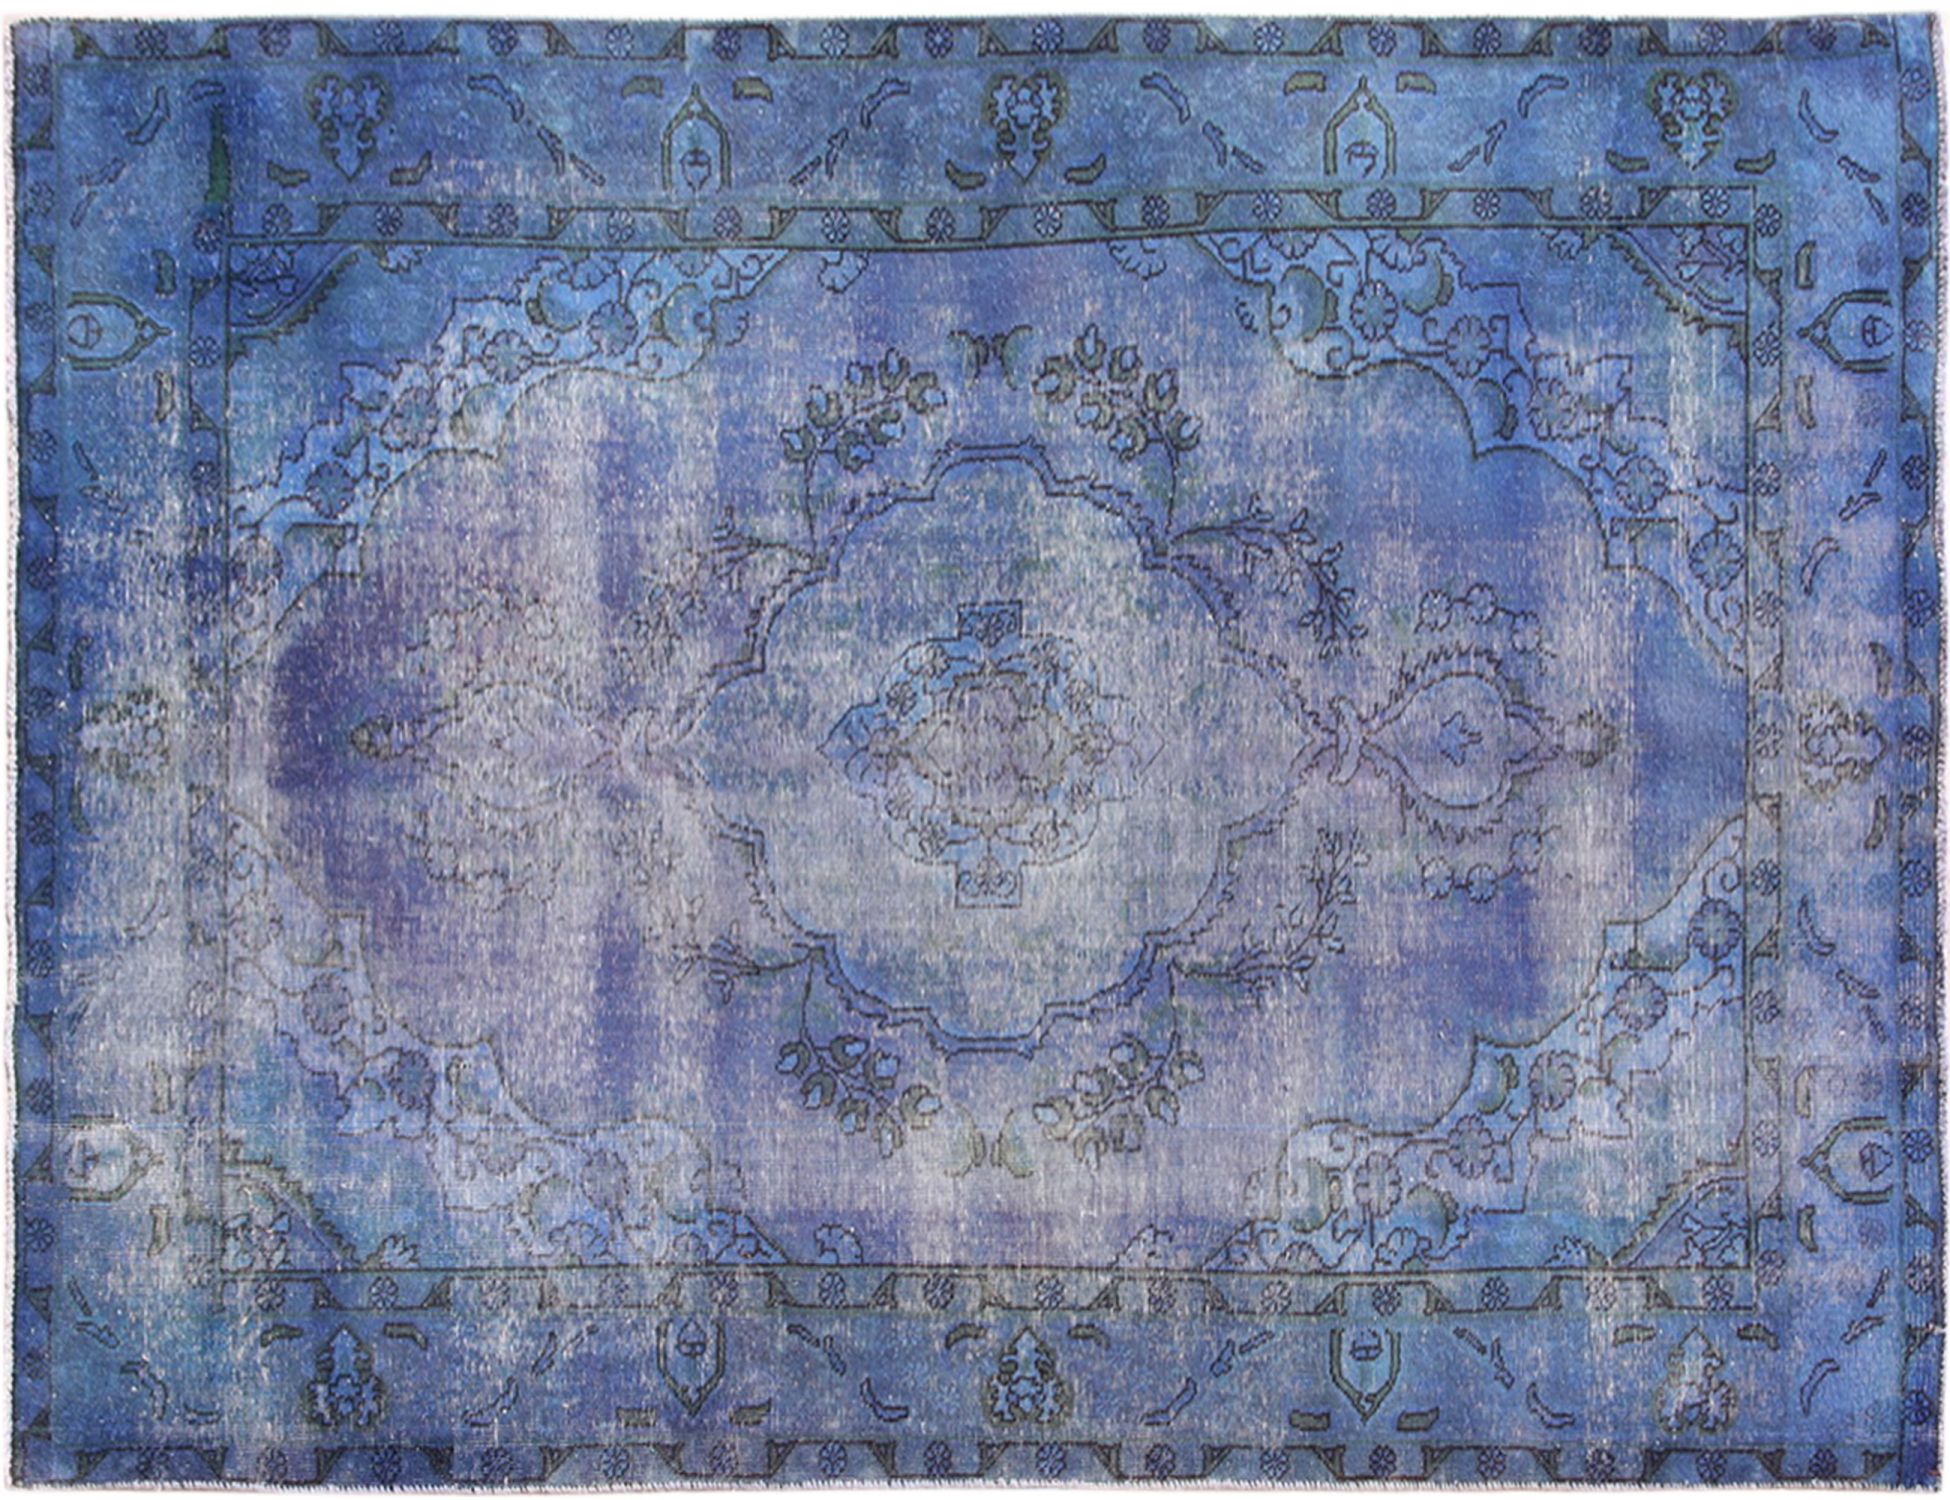 Persischer Vintage Teppich  blau <br/>300 x 200 cm